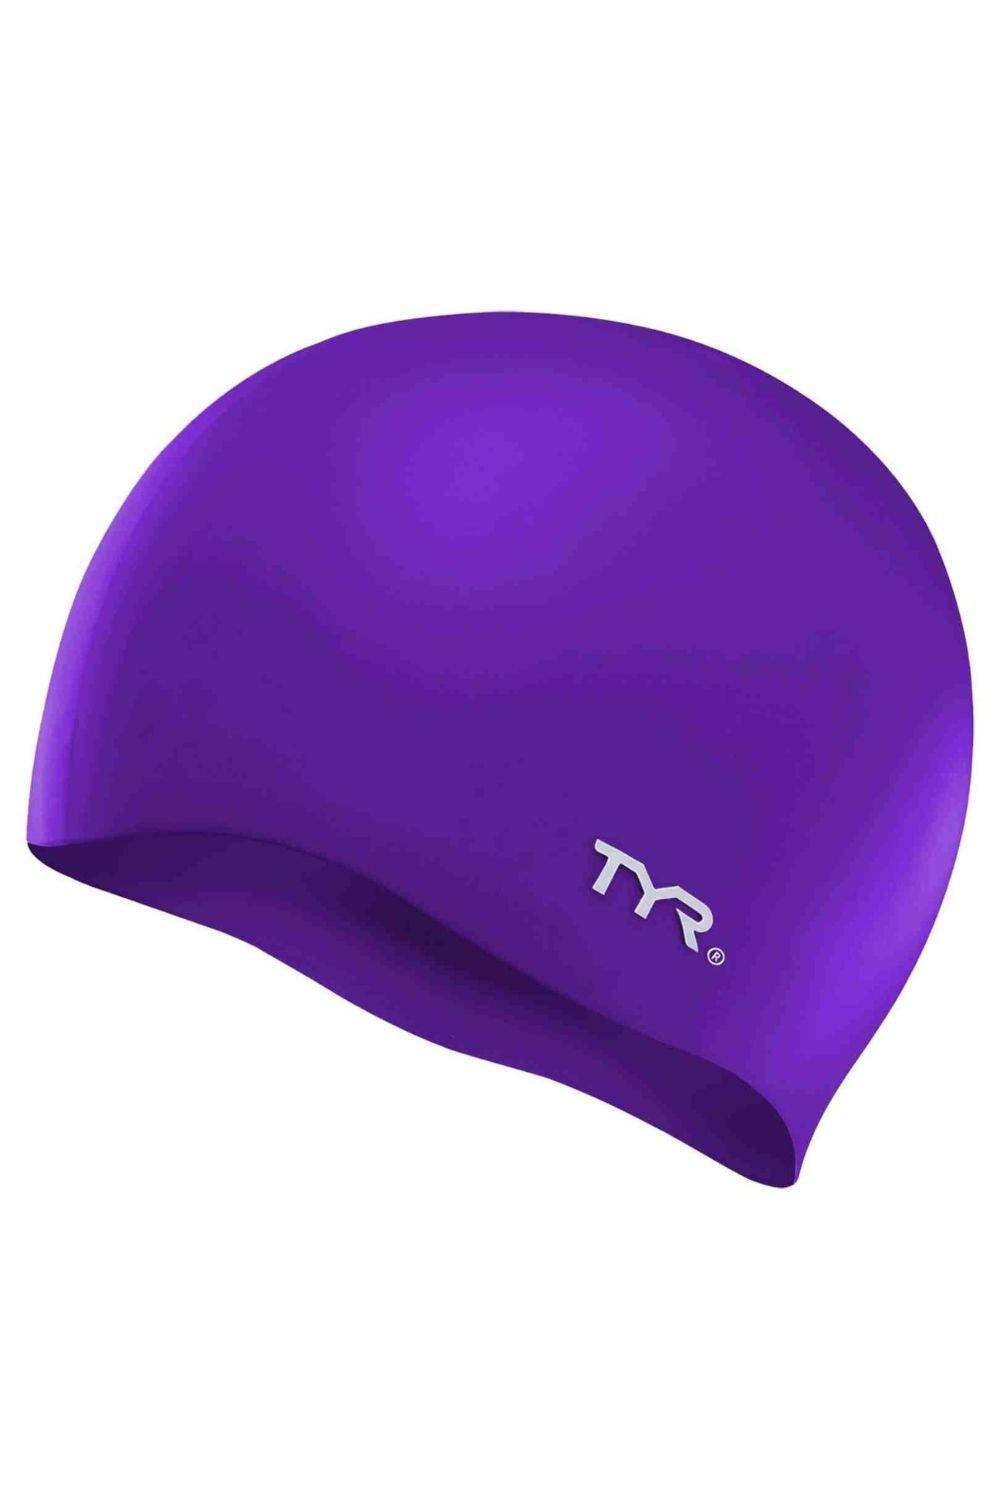 Силиконовая шапочка для плавания без морщин Tyr, фиолетовый